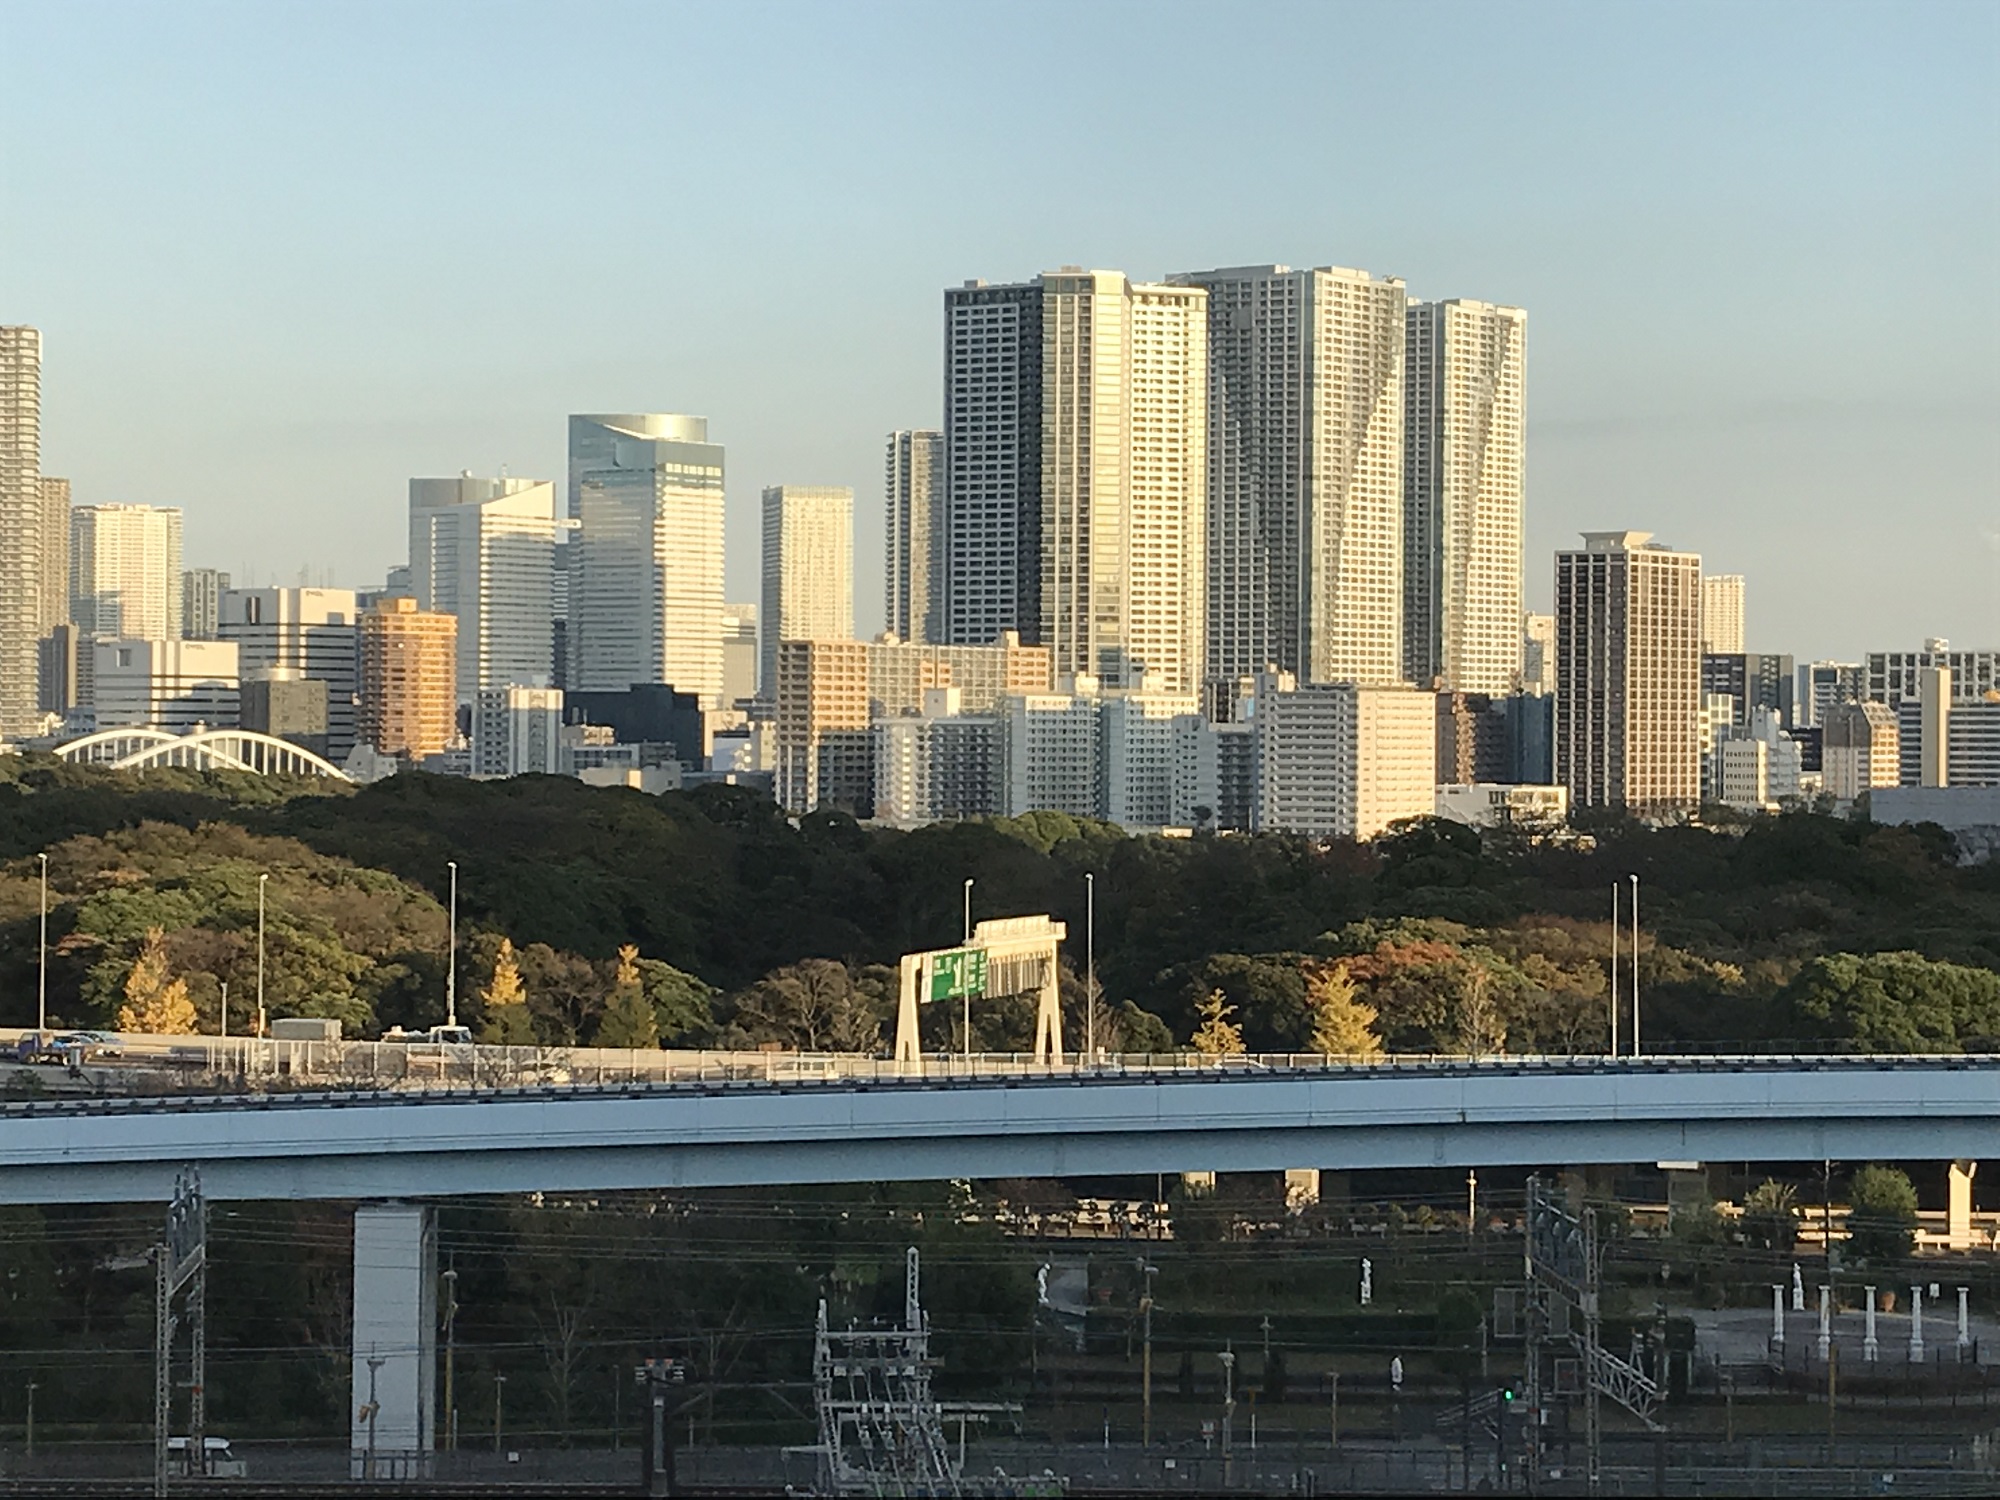 三井ガーデンホテル 汐留イタリア街 モデレートクイーン 窓から見える景色 昼に撮影